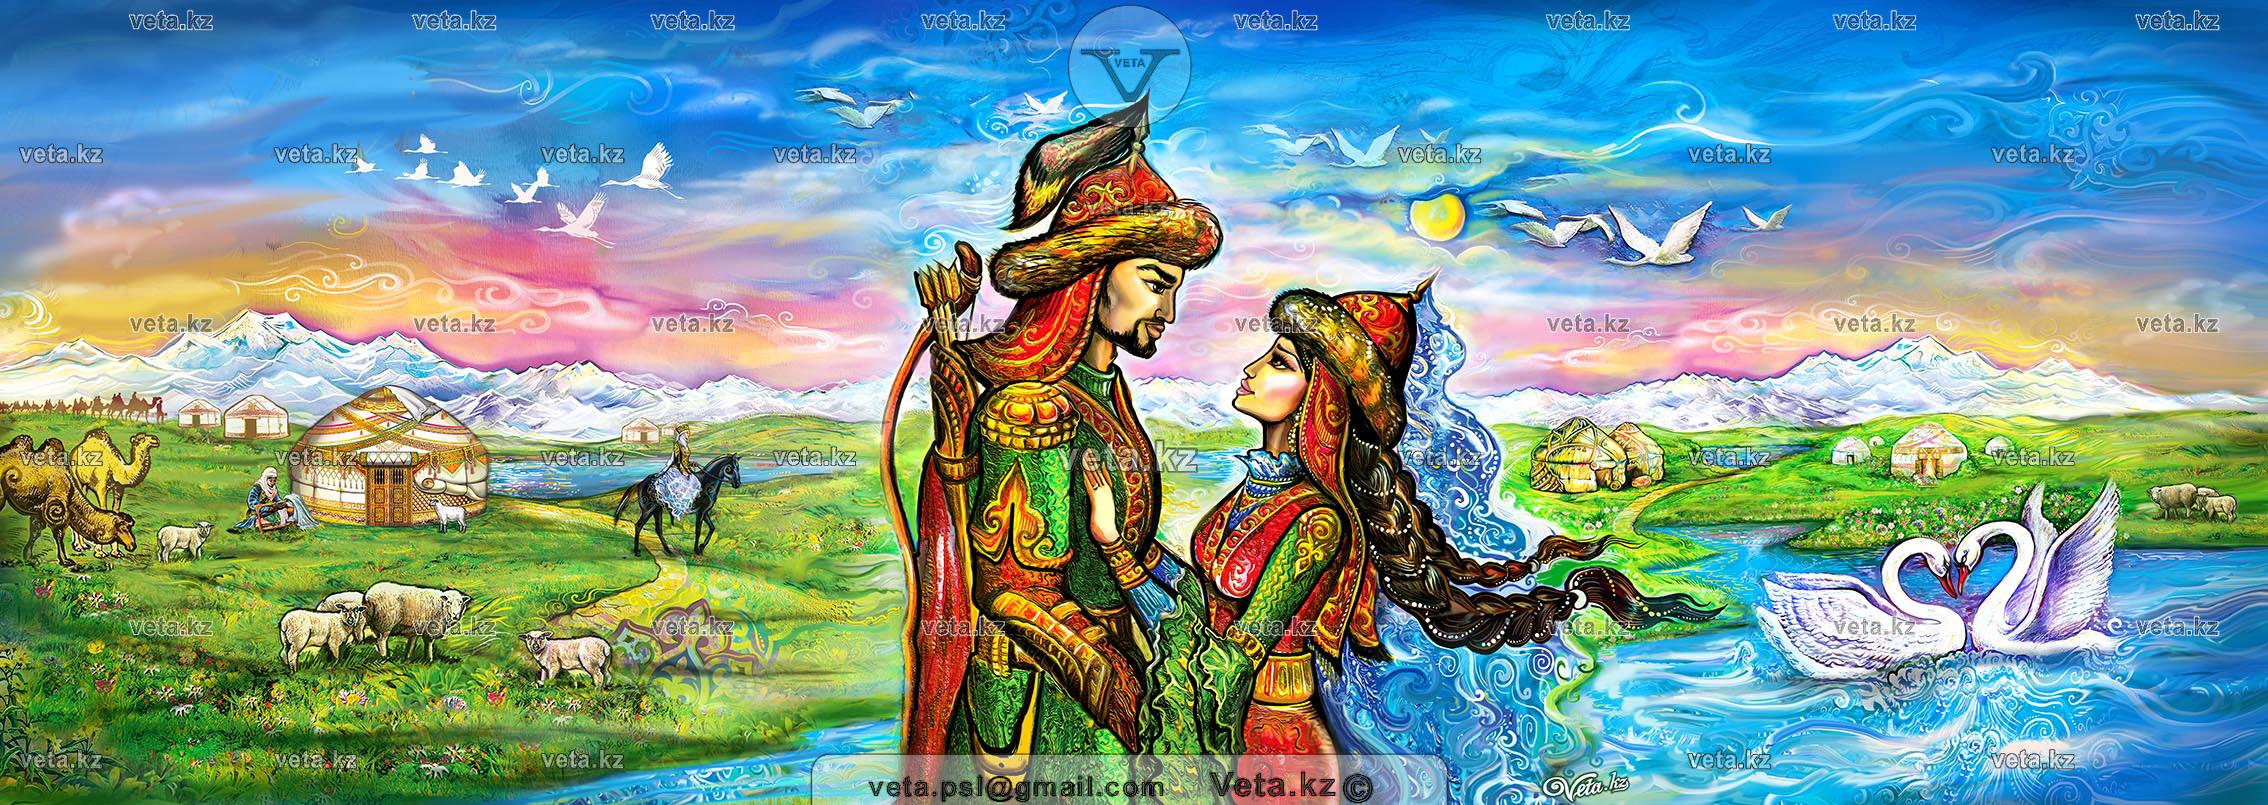 Иллюстрации к казахским сказкам о любви двух влюблённых, Свадебные традиции ритуалы в Казахстане